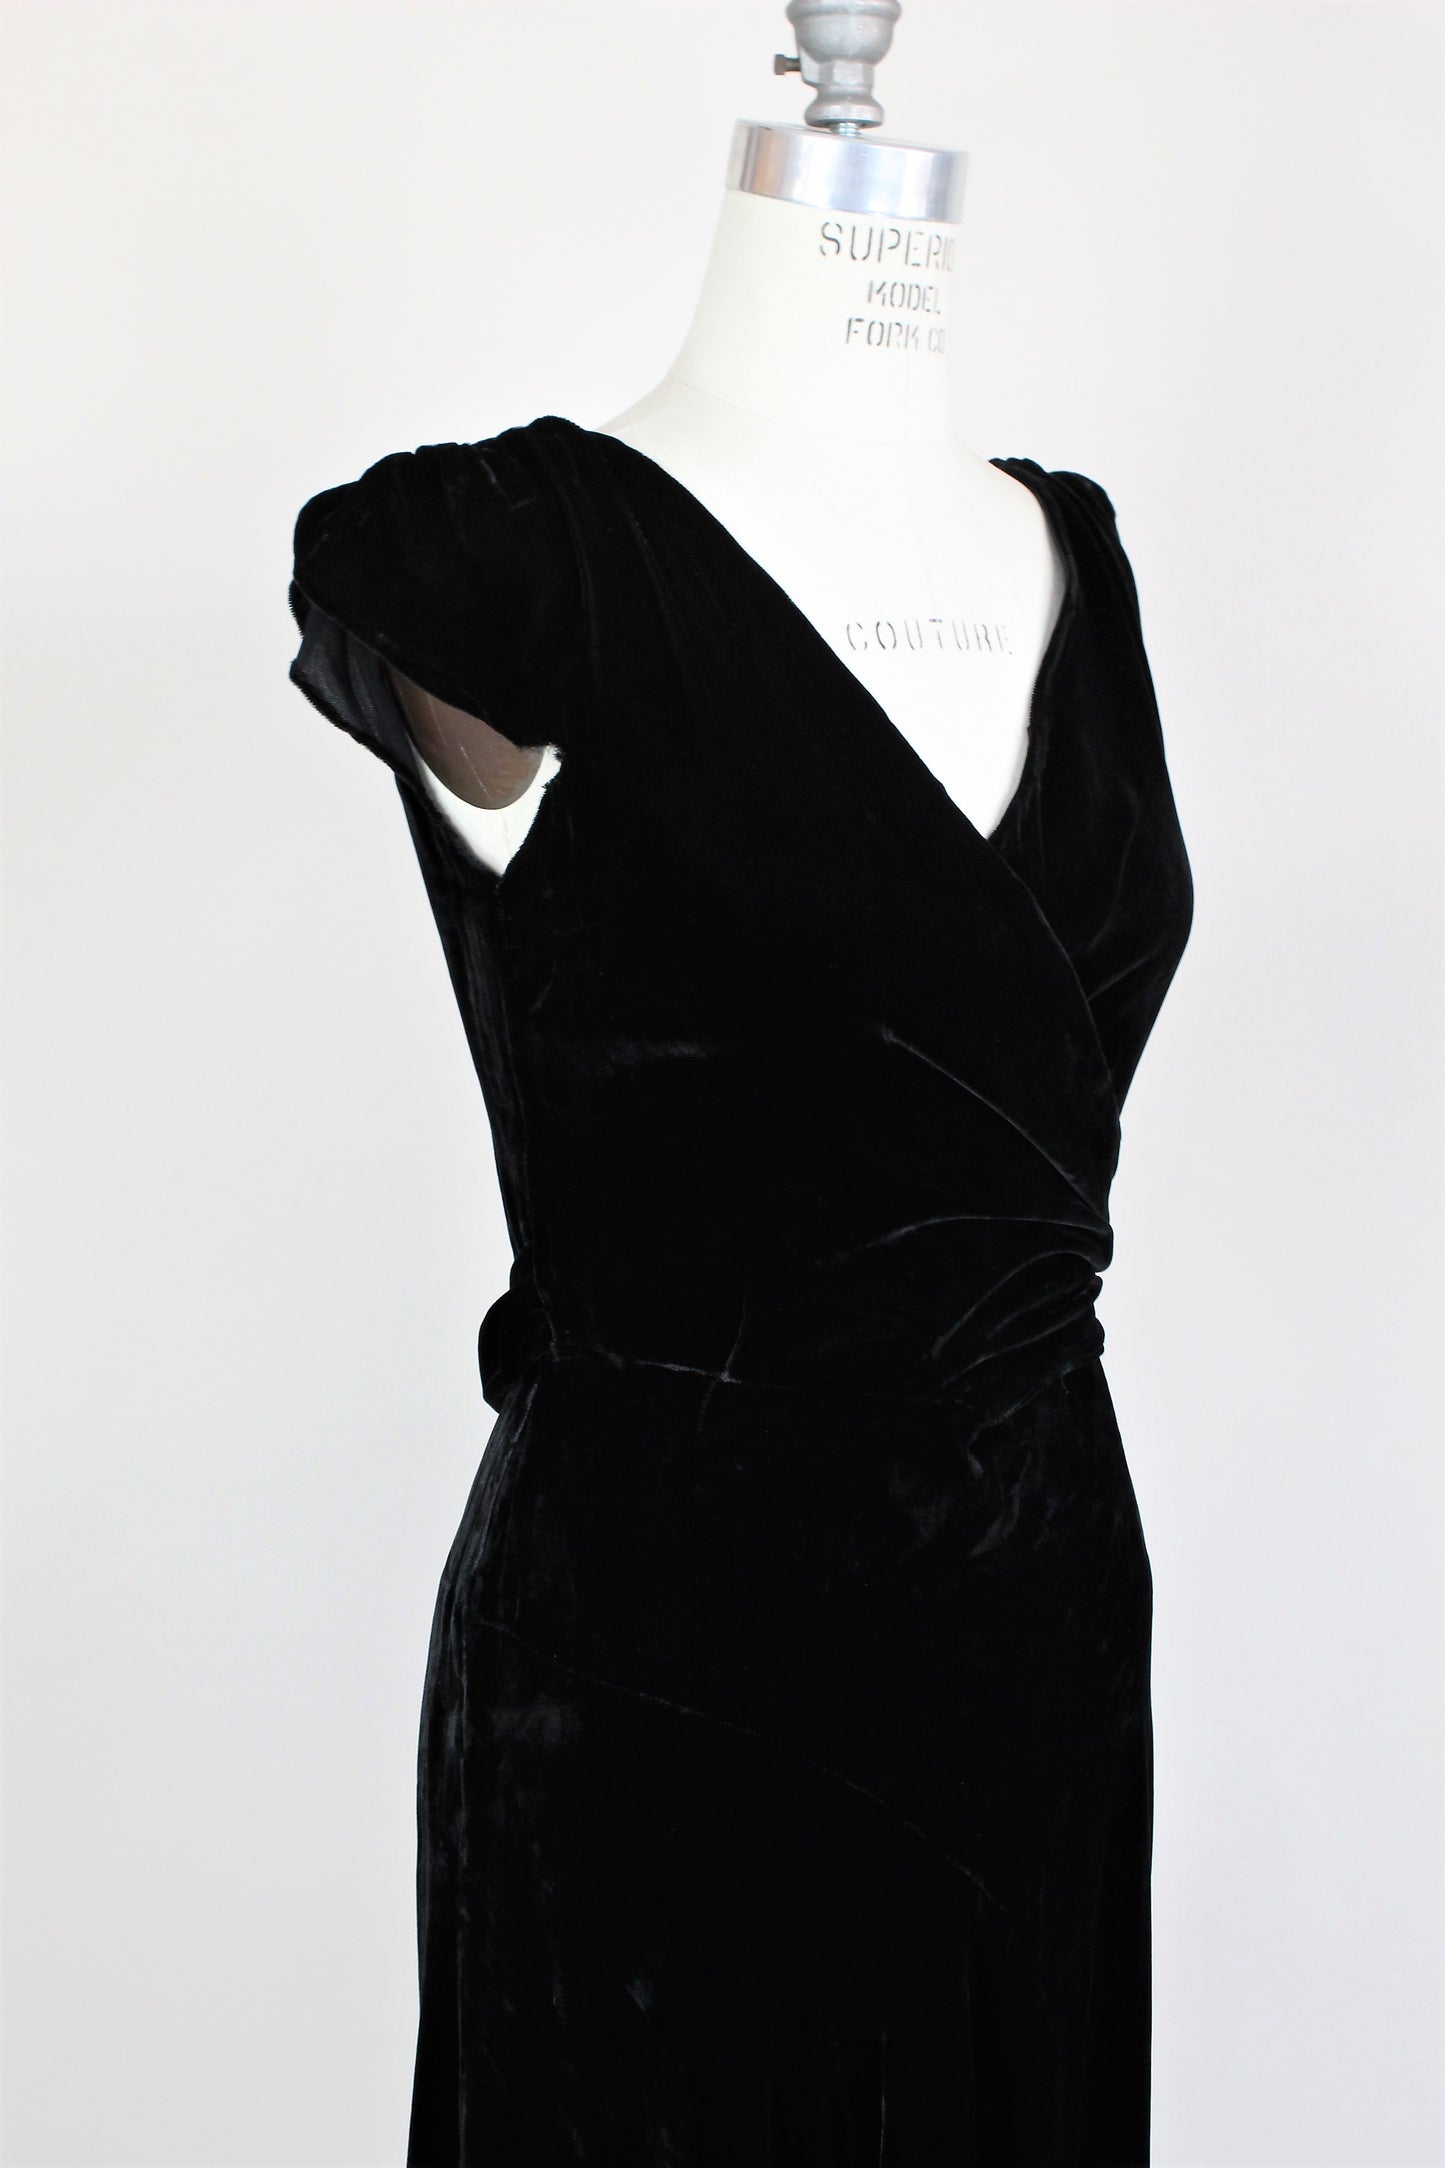 Vintage 1930s Black Silk Velvet Dress From Jays Boston